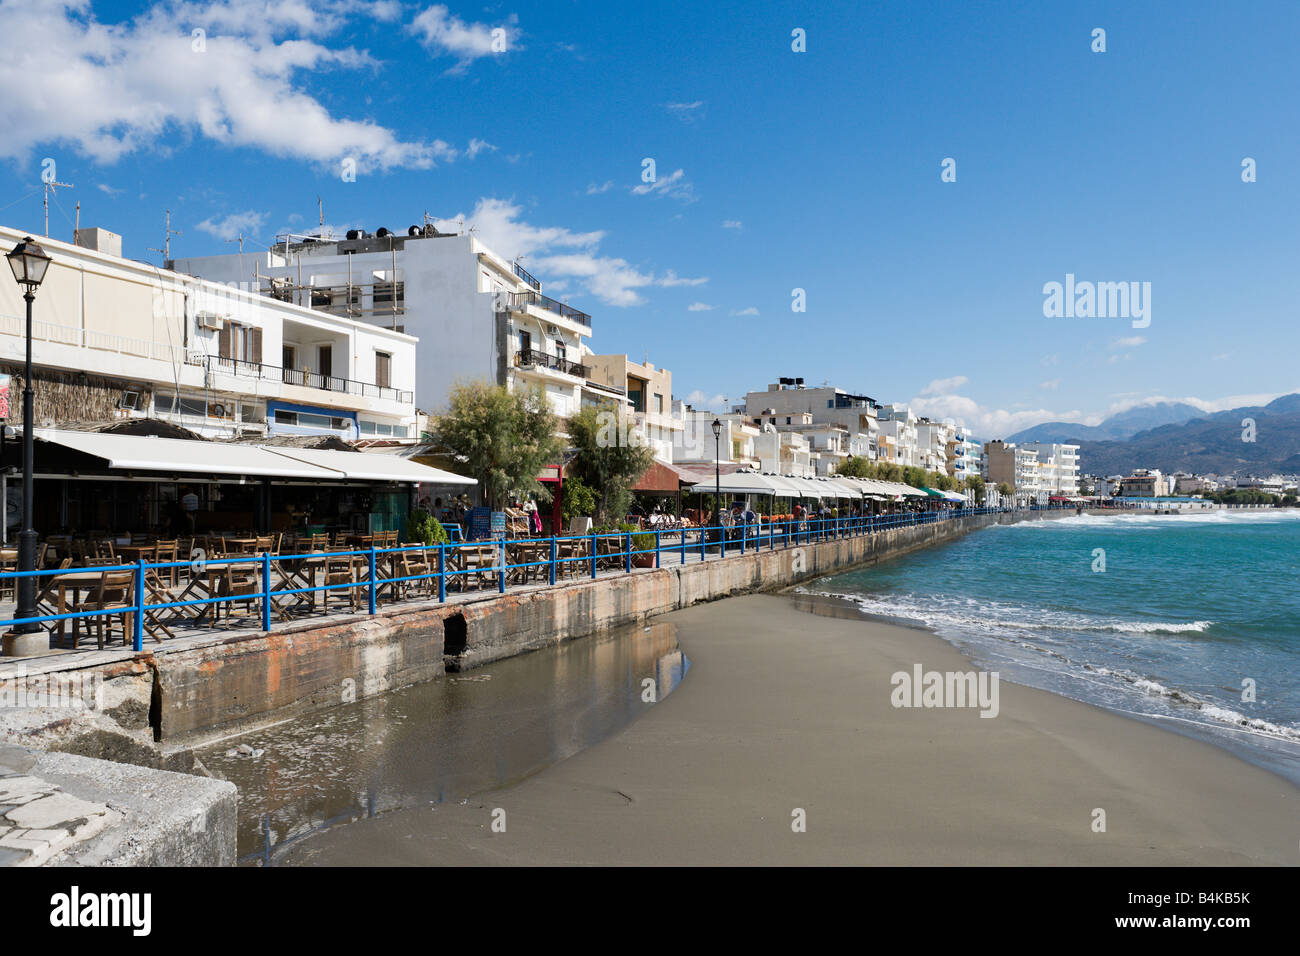 La passeggiata sul lungomare nel centro del resort, Ierapetra, Creta, Grecia Foto Stock